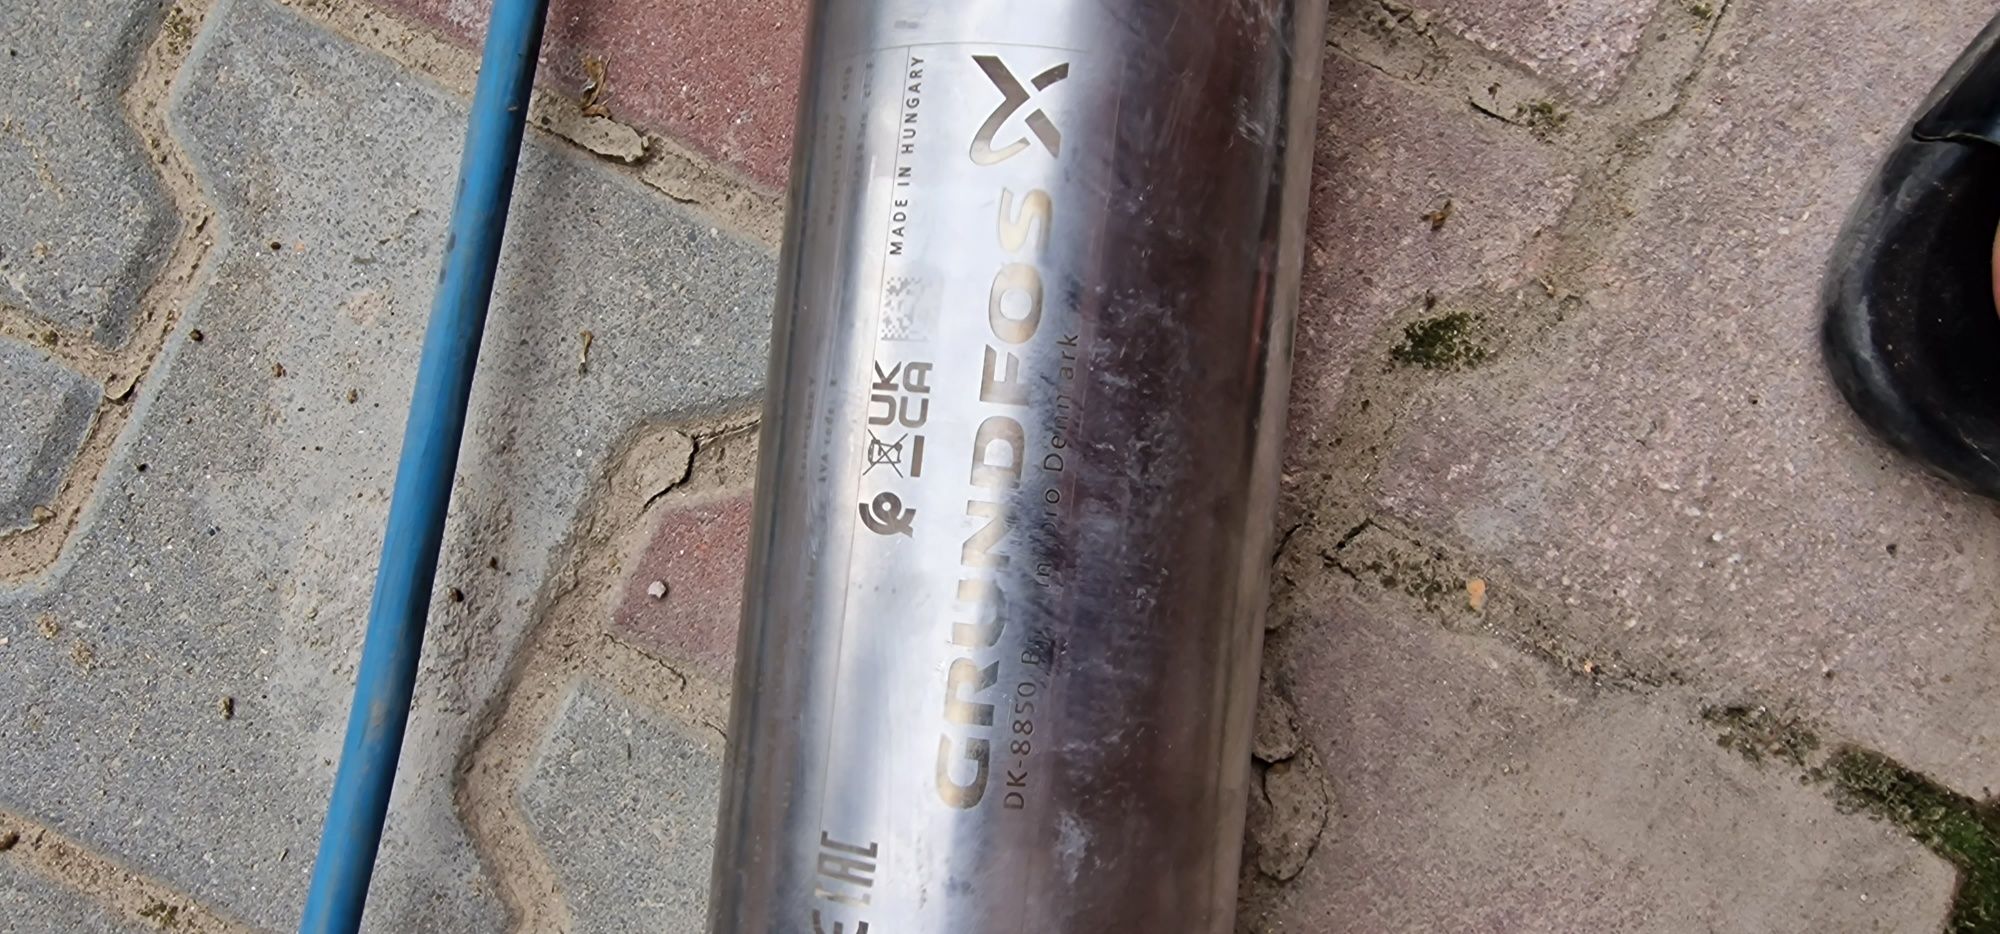 Vand pompa grundfos sp14-11.    Ms4000